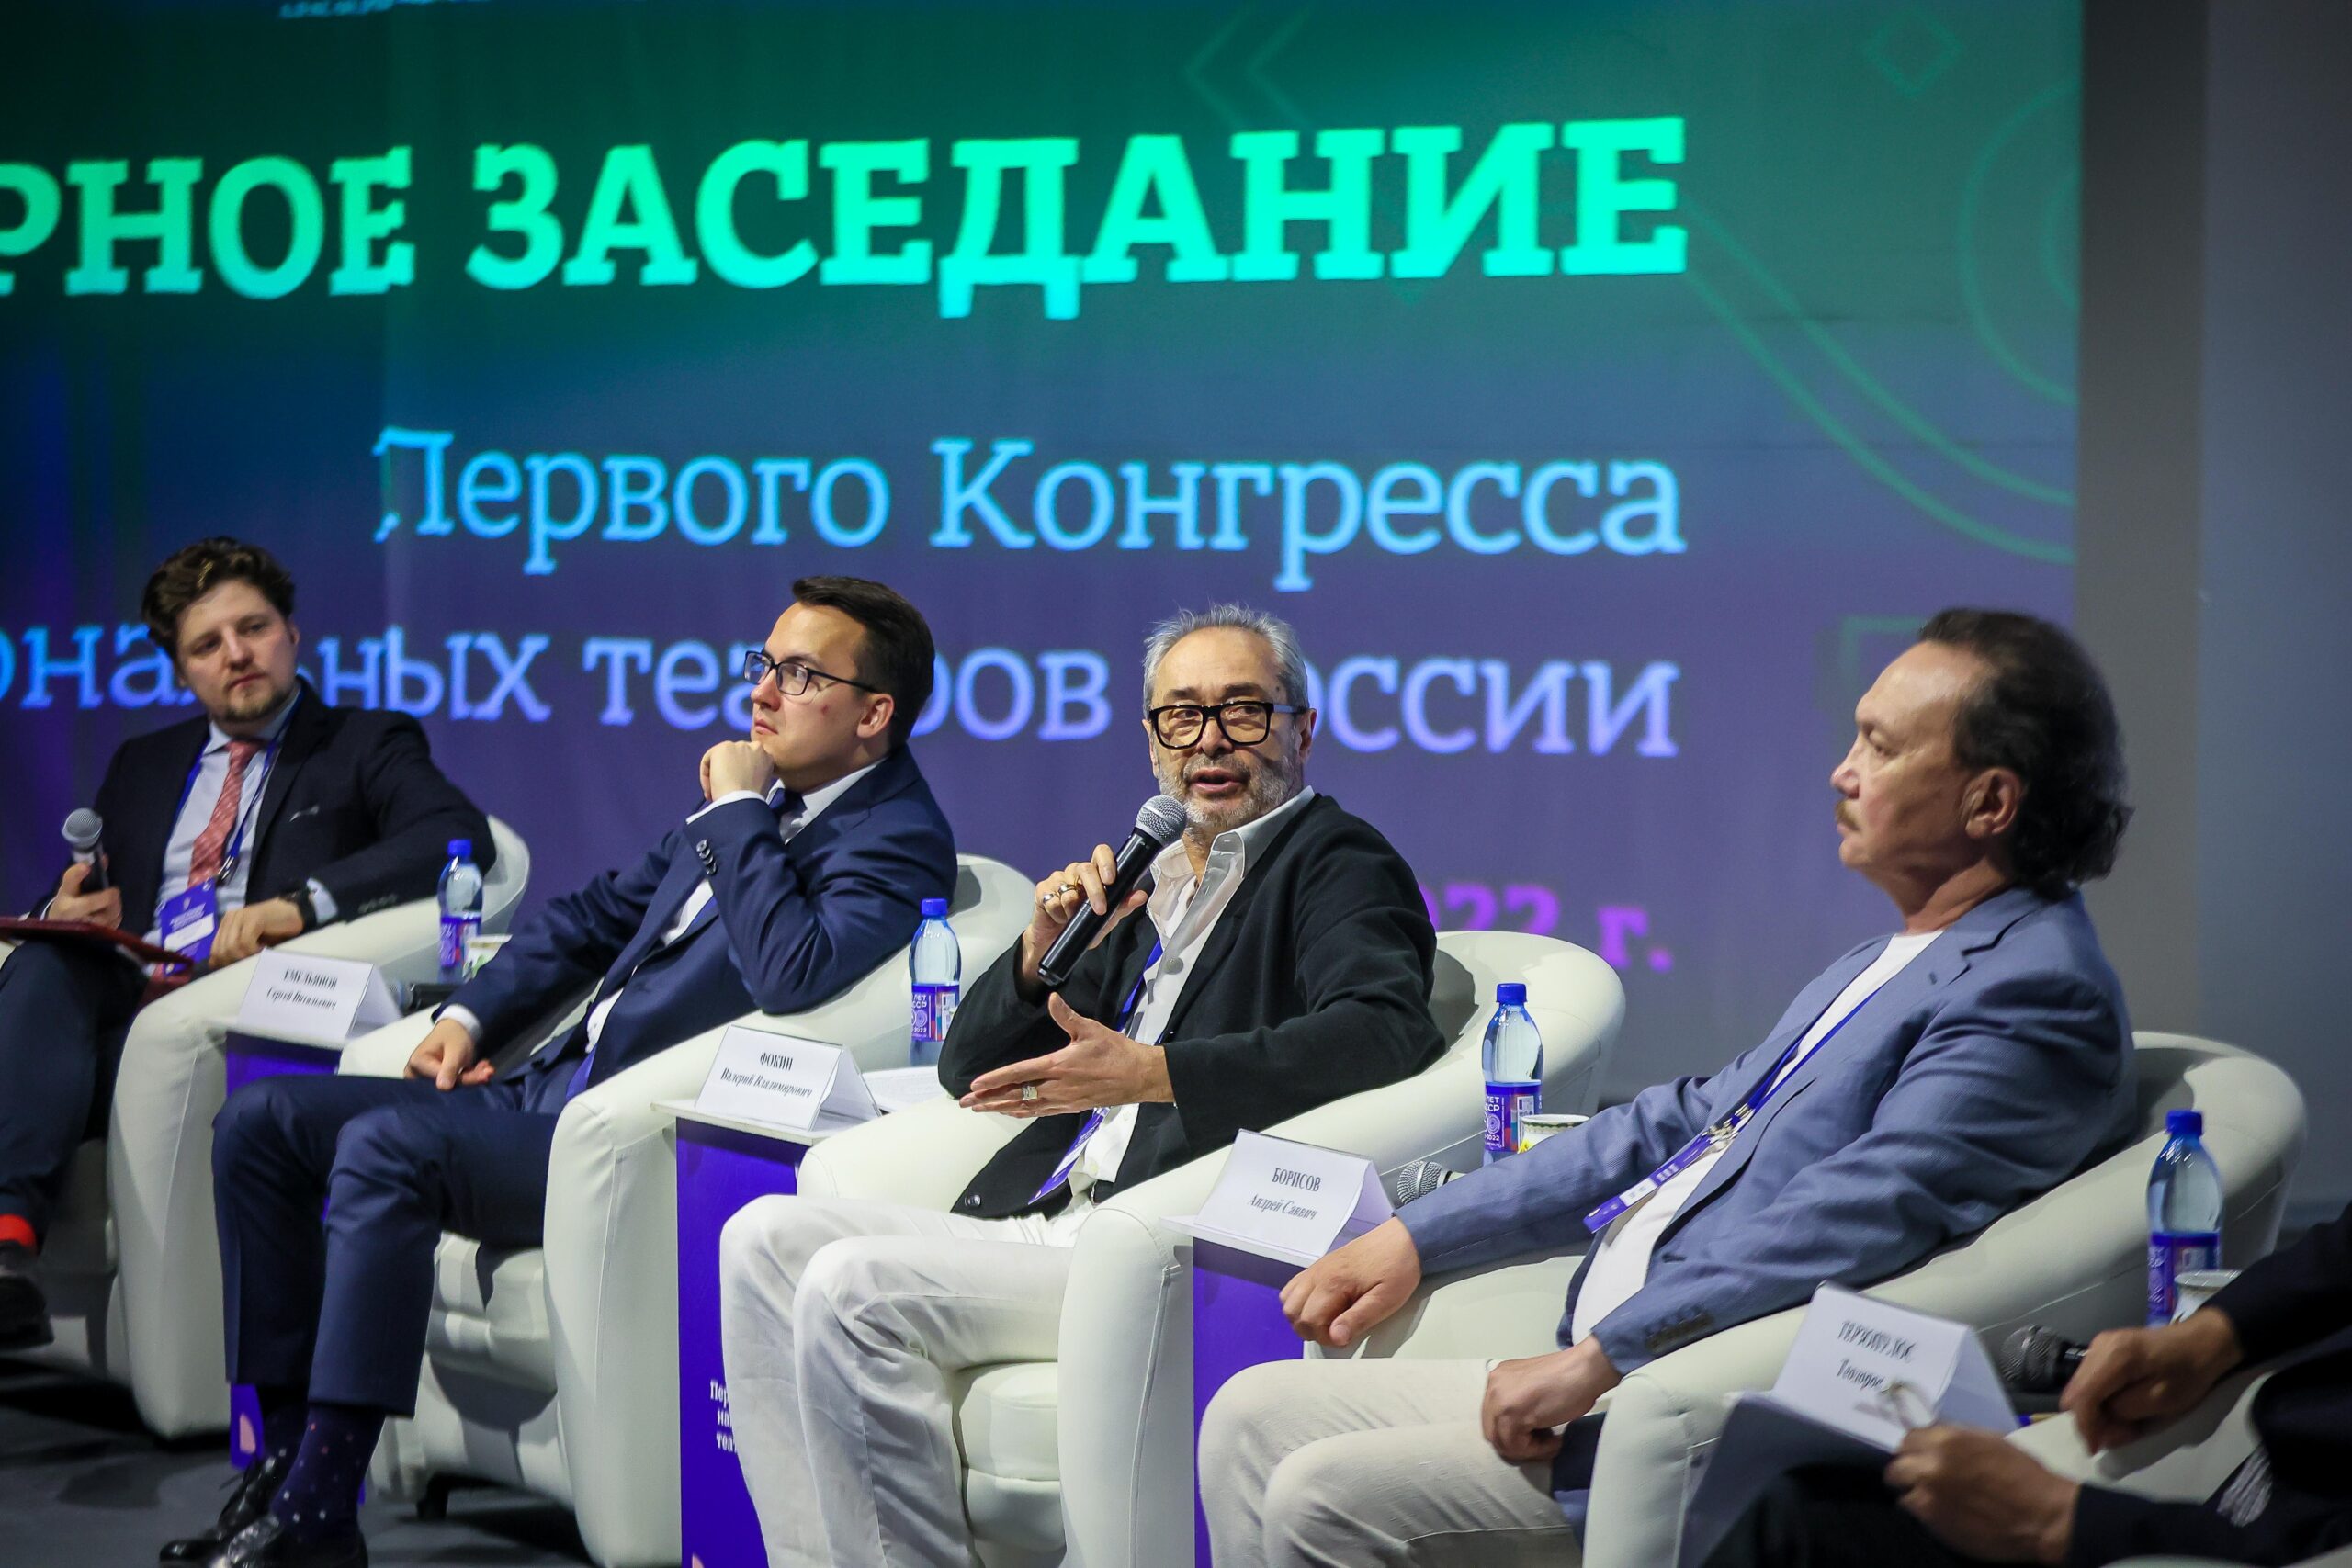 Сто человек приняли участие в первом конгрессе национальных театров РФ в Якутске